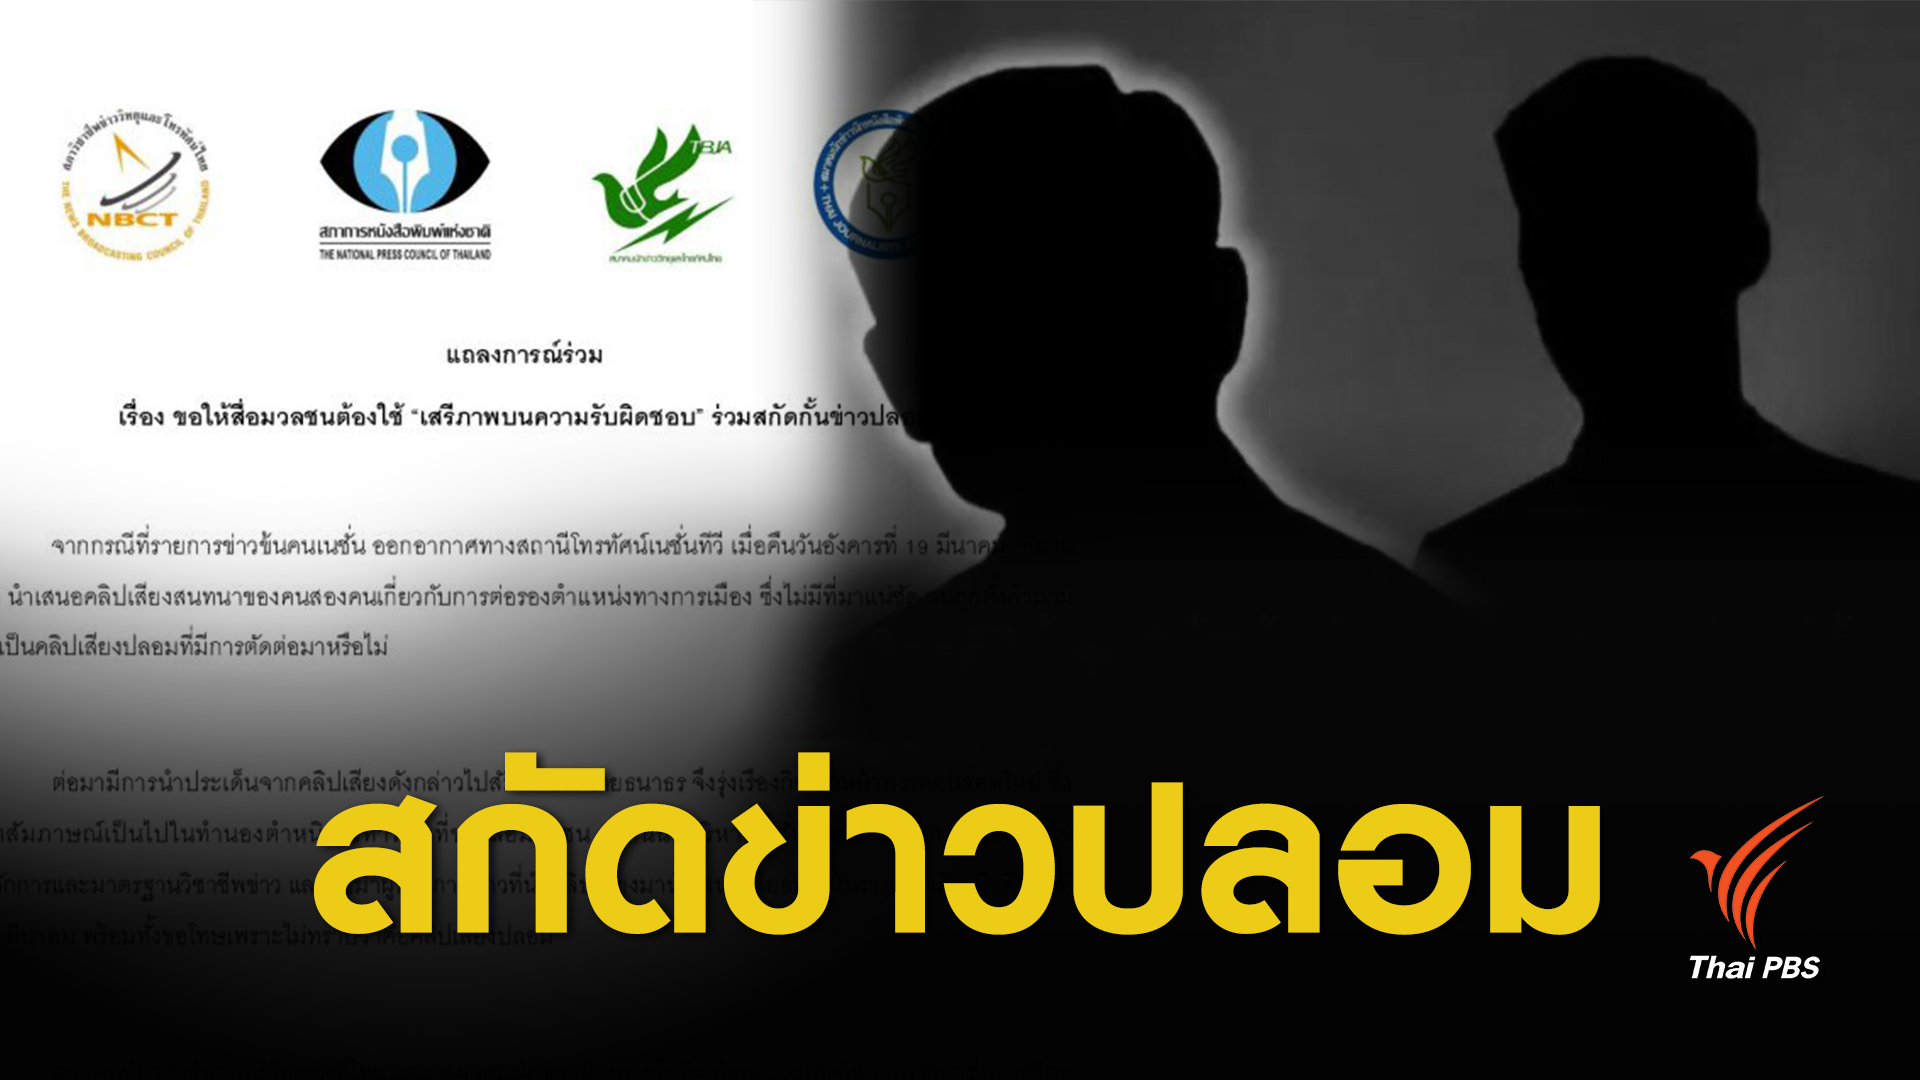  เสรีภาพบนความรับผิดชอบ ! แถลงการณ์องค์กรสื่อ ปมเนชั่นเสนอคลิปเสียง